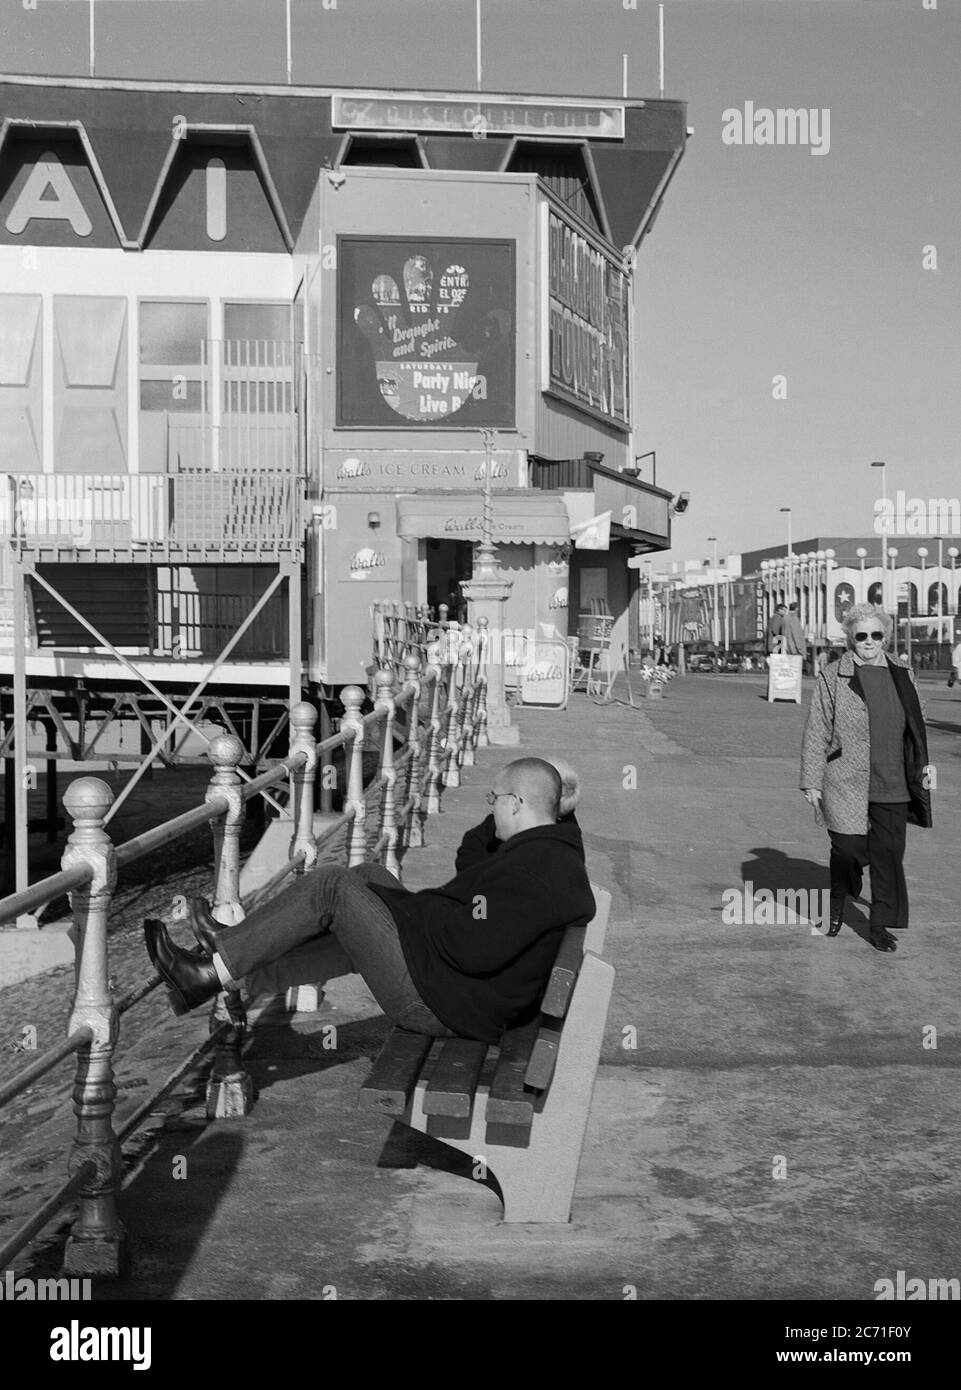 Personnes assises sur un banc sur le front de mer de Blackpool, nord-ouest de l'Angleterre, Royaume-Uni Banque D'Images